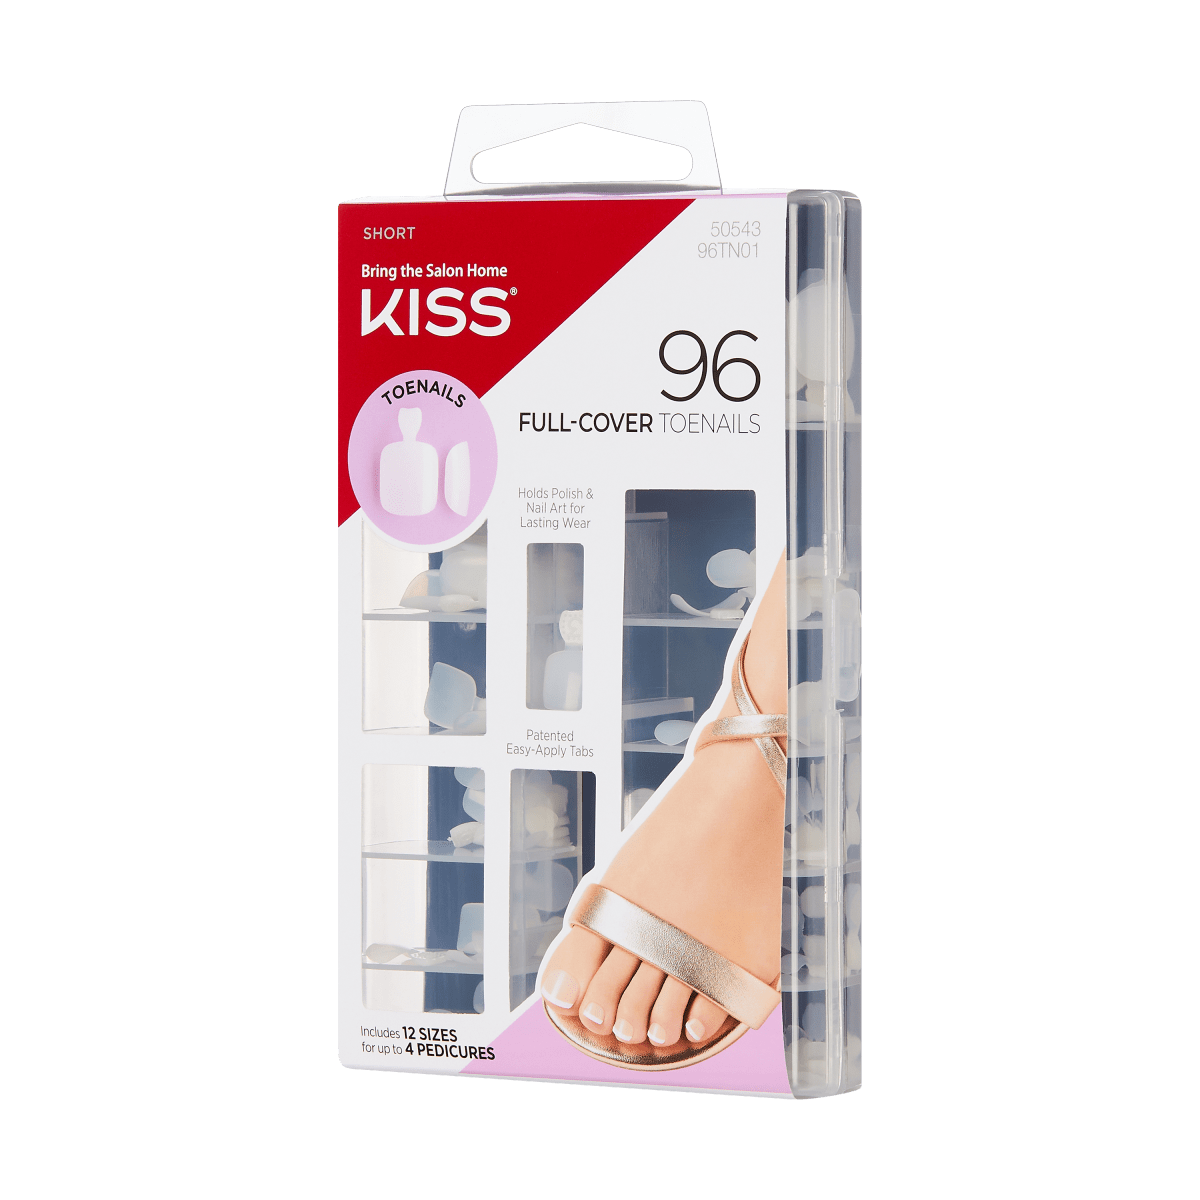 Kiss 96 Full Cover Toenails Kit, 12 Sizes (96TN01)